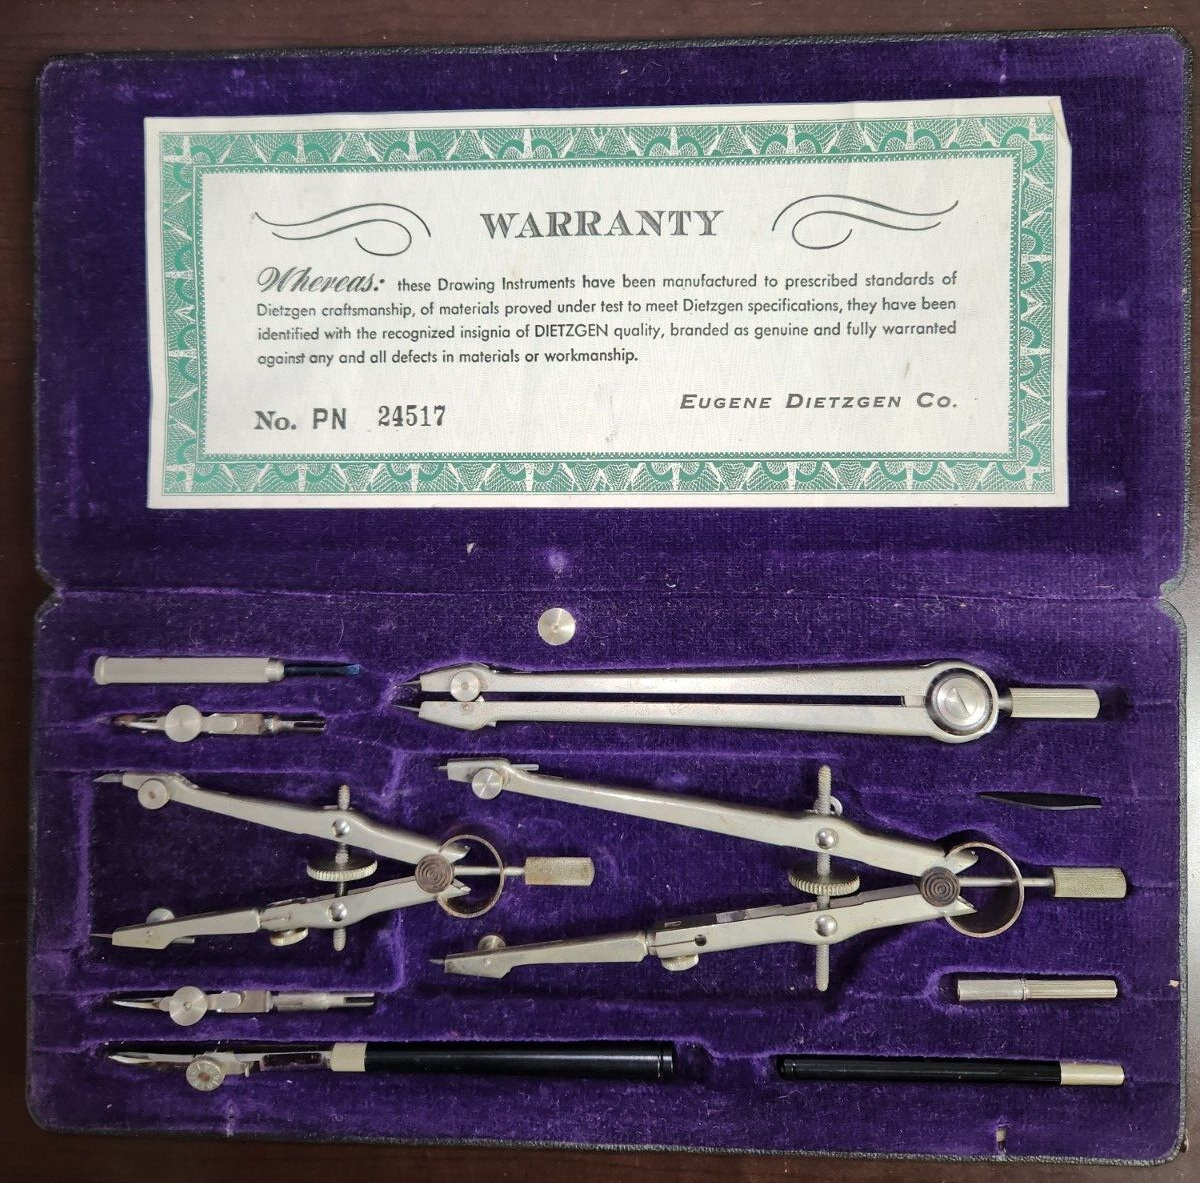 Vintage Dietzgen Politek Drawing / Drafting Instrument Set 1252PJ, Engineering